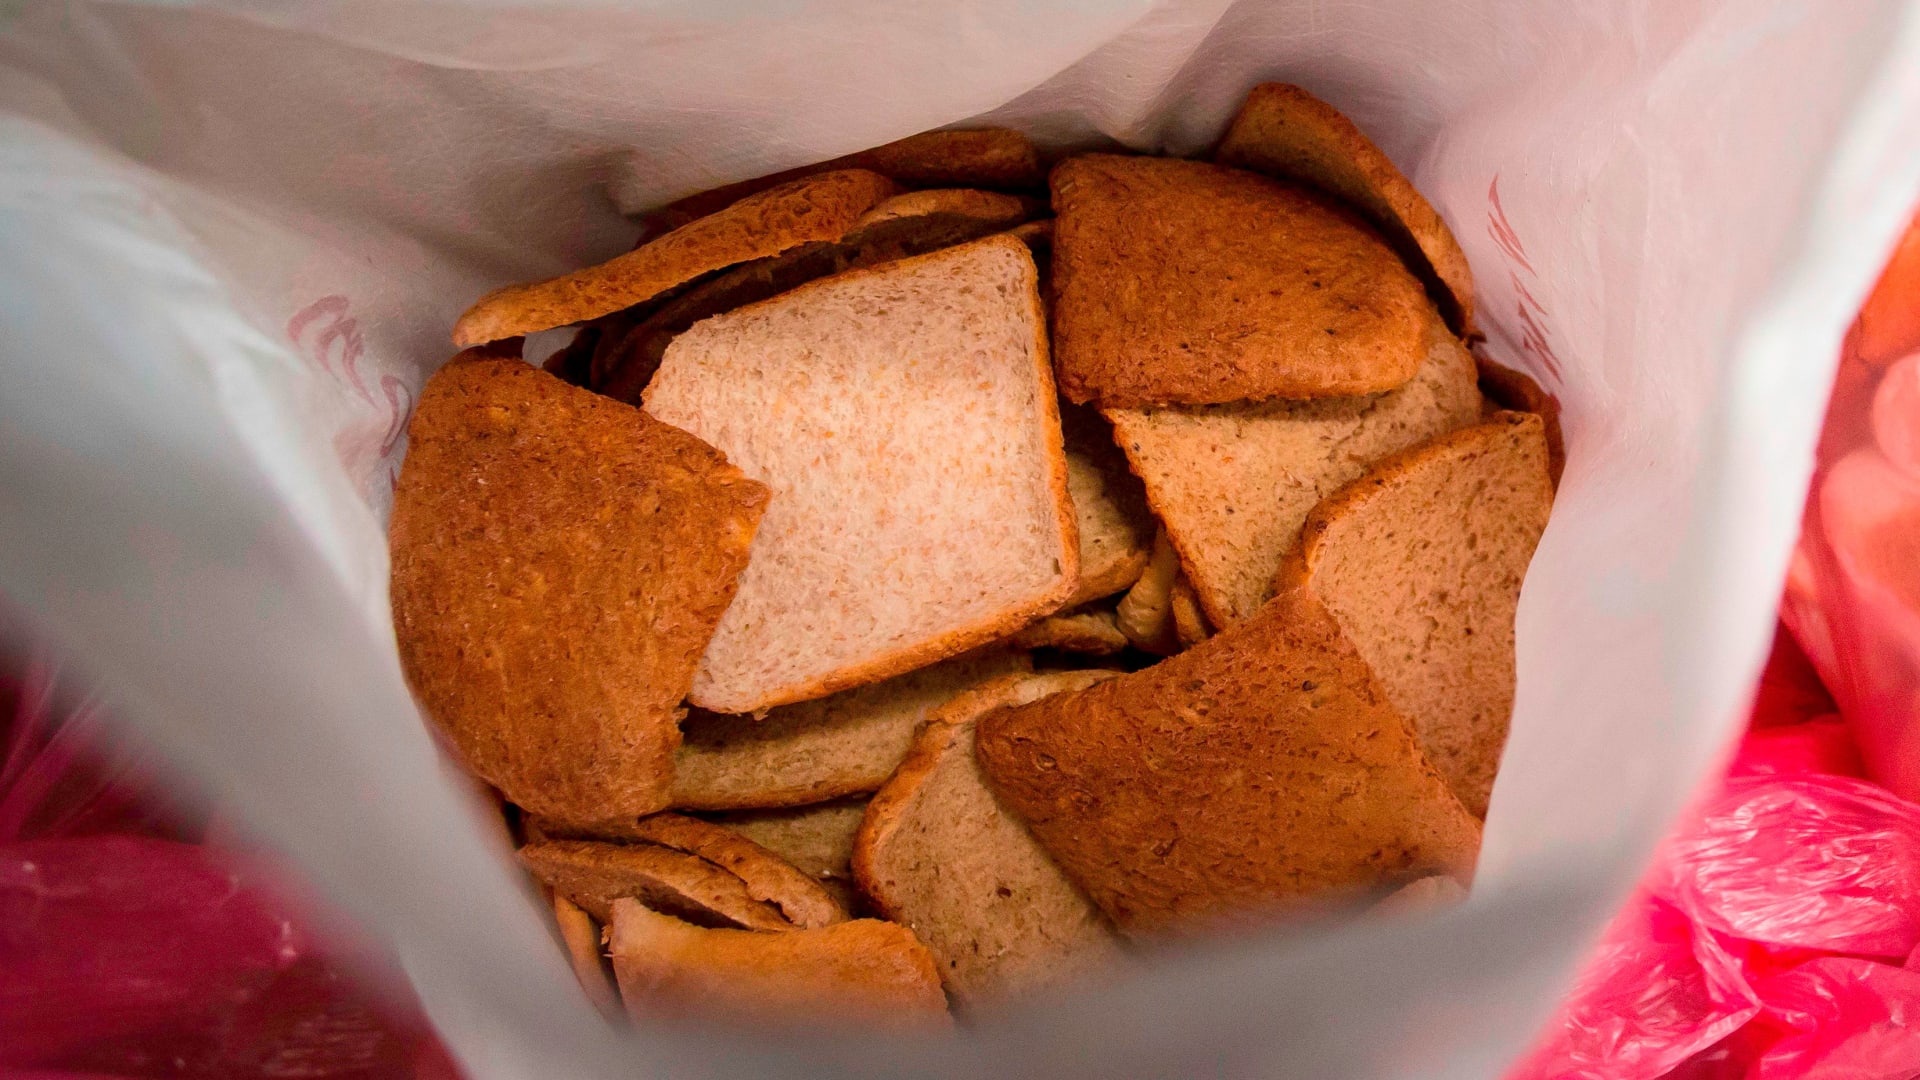 السر يكمن في الطحين.. كيف يمكنك التأكد من أن الخبز الذي تتناوله صحي؟